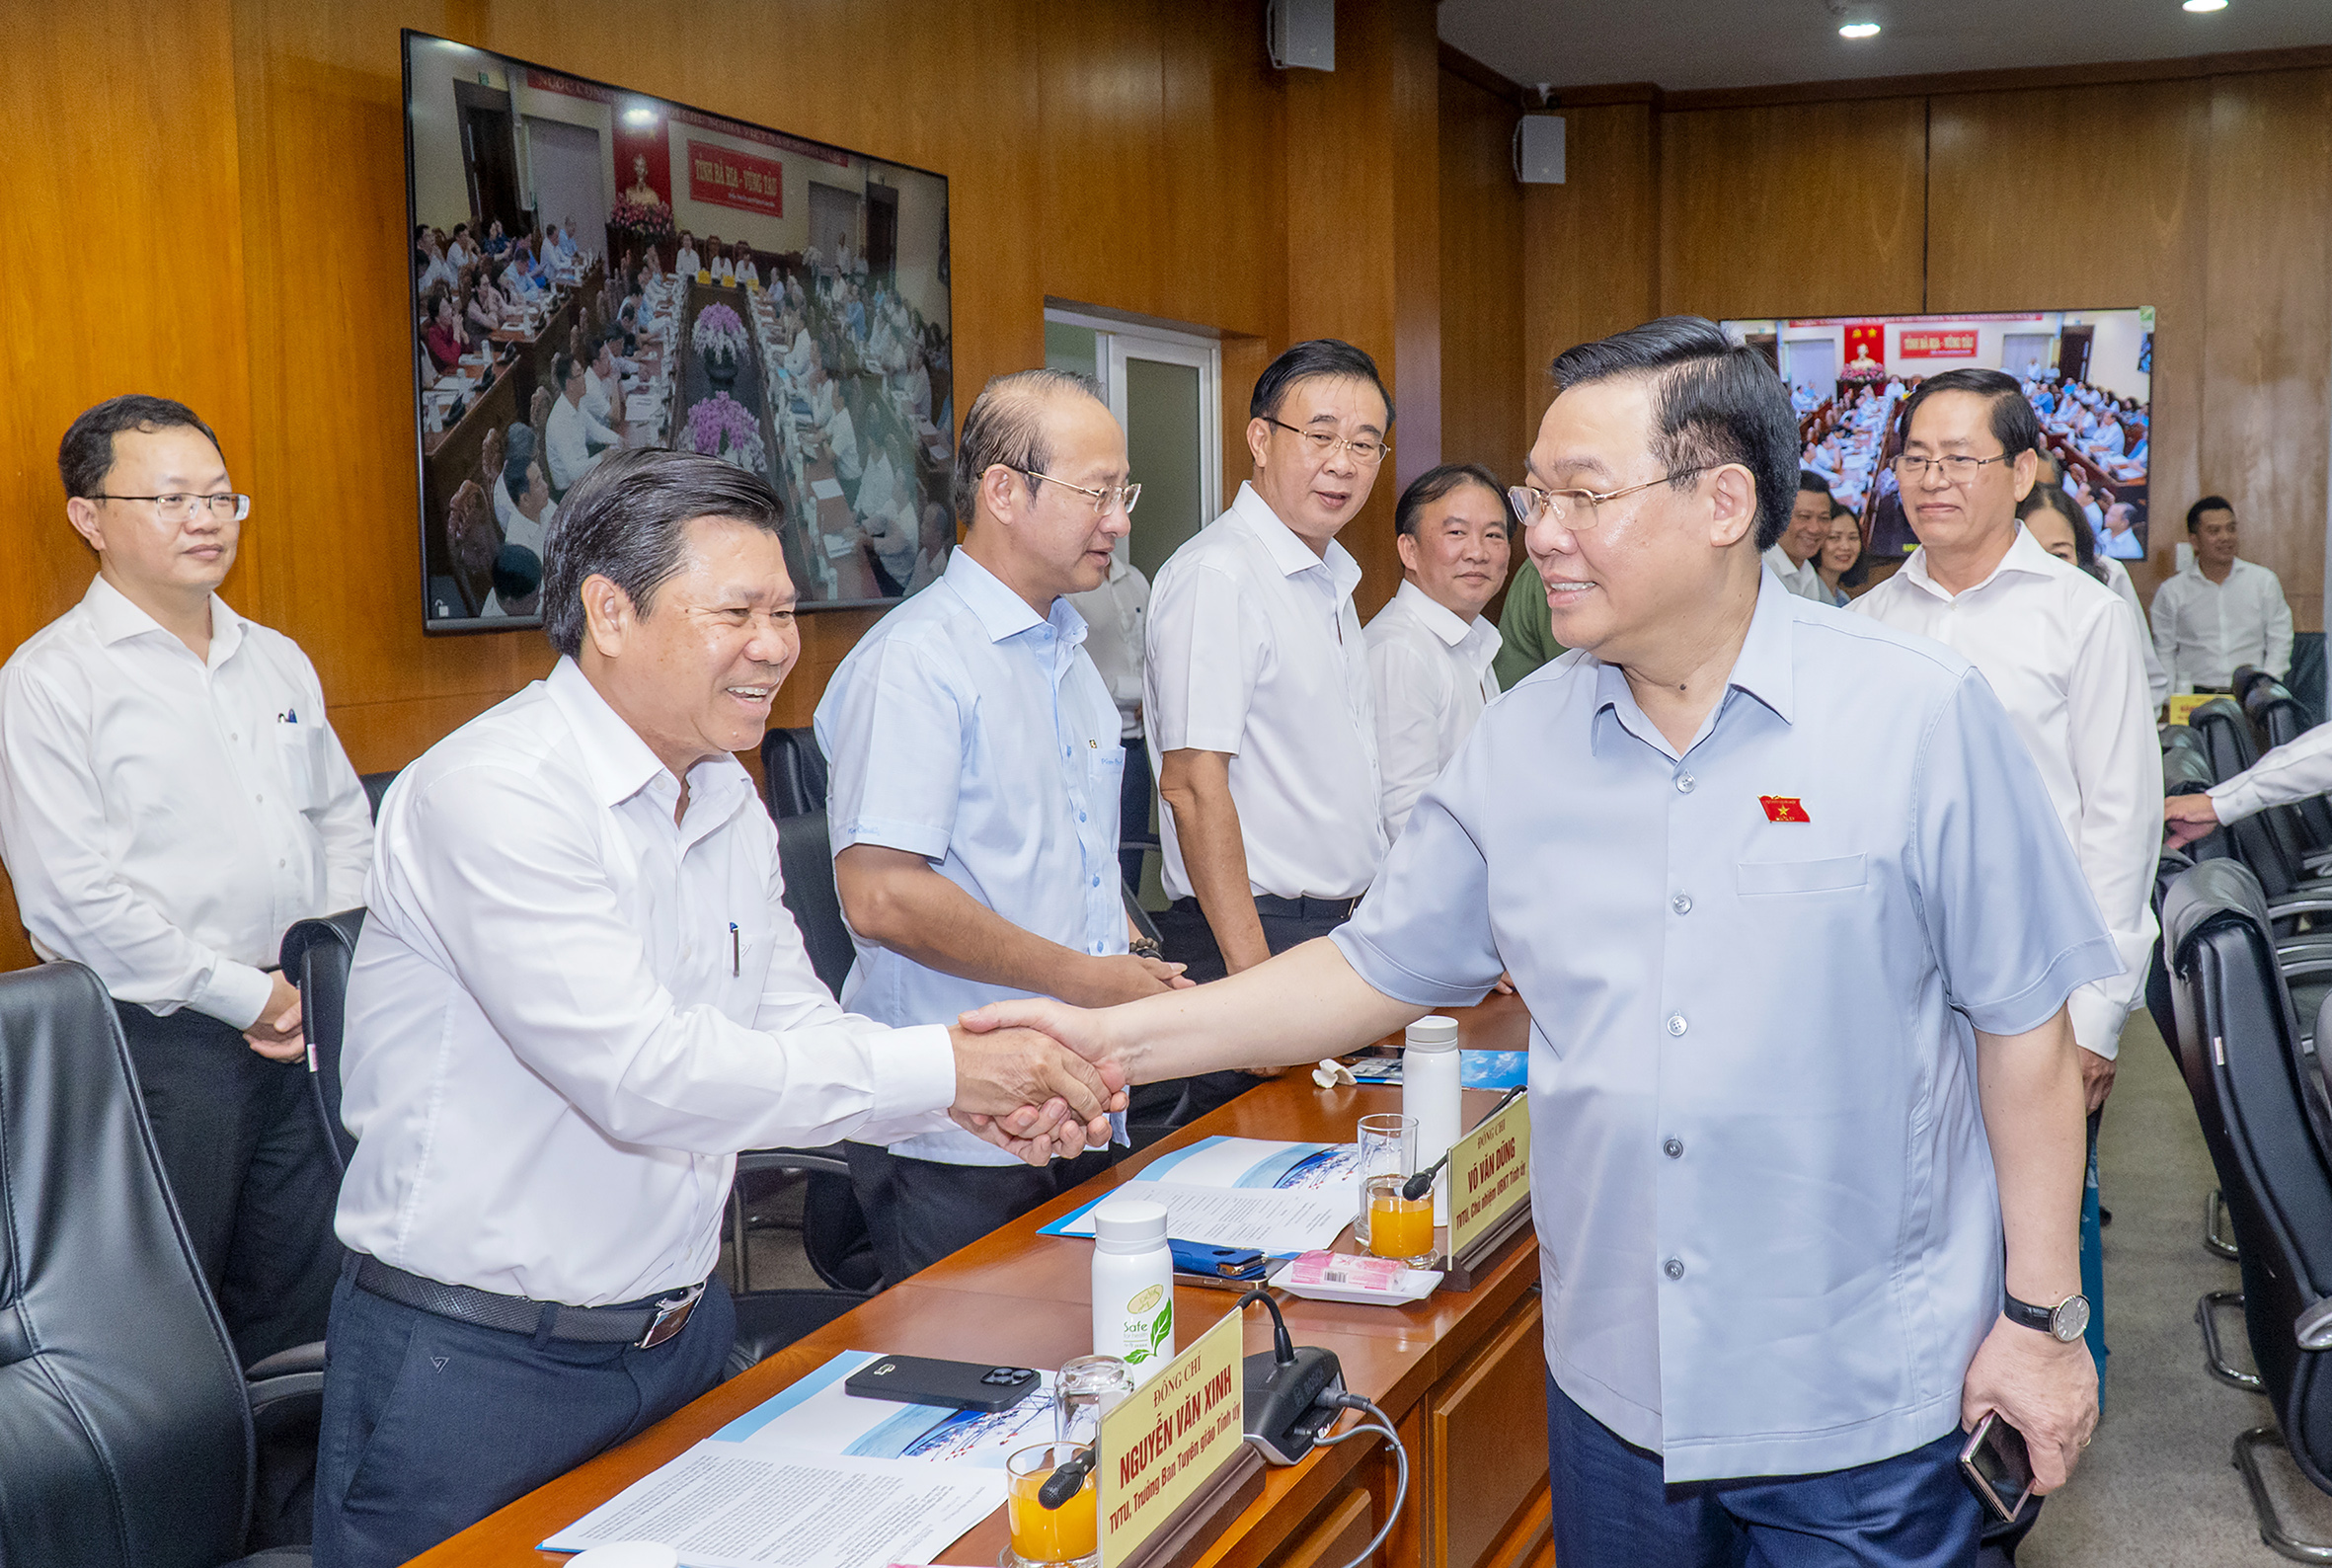 Chủ tịch Quốc hội Vương Đình Huệ gặp mặt Ủy viên Ban Thường vụ Tỉnh ủy Bà Rịa - Vũng Tàu trong chương trình làm việc.